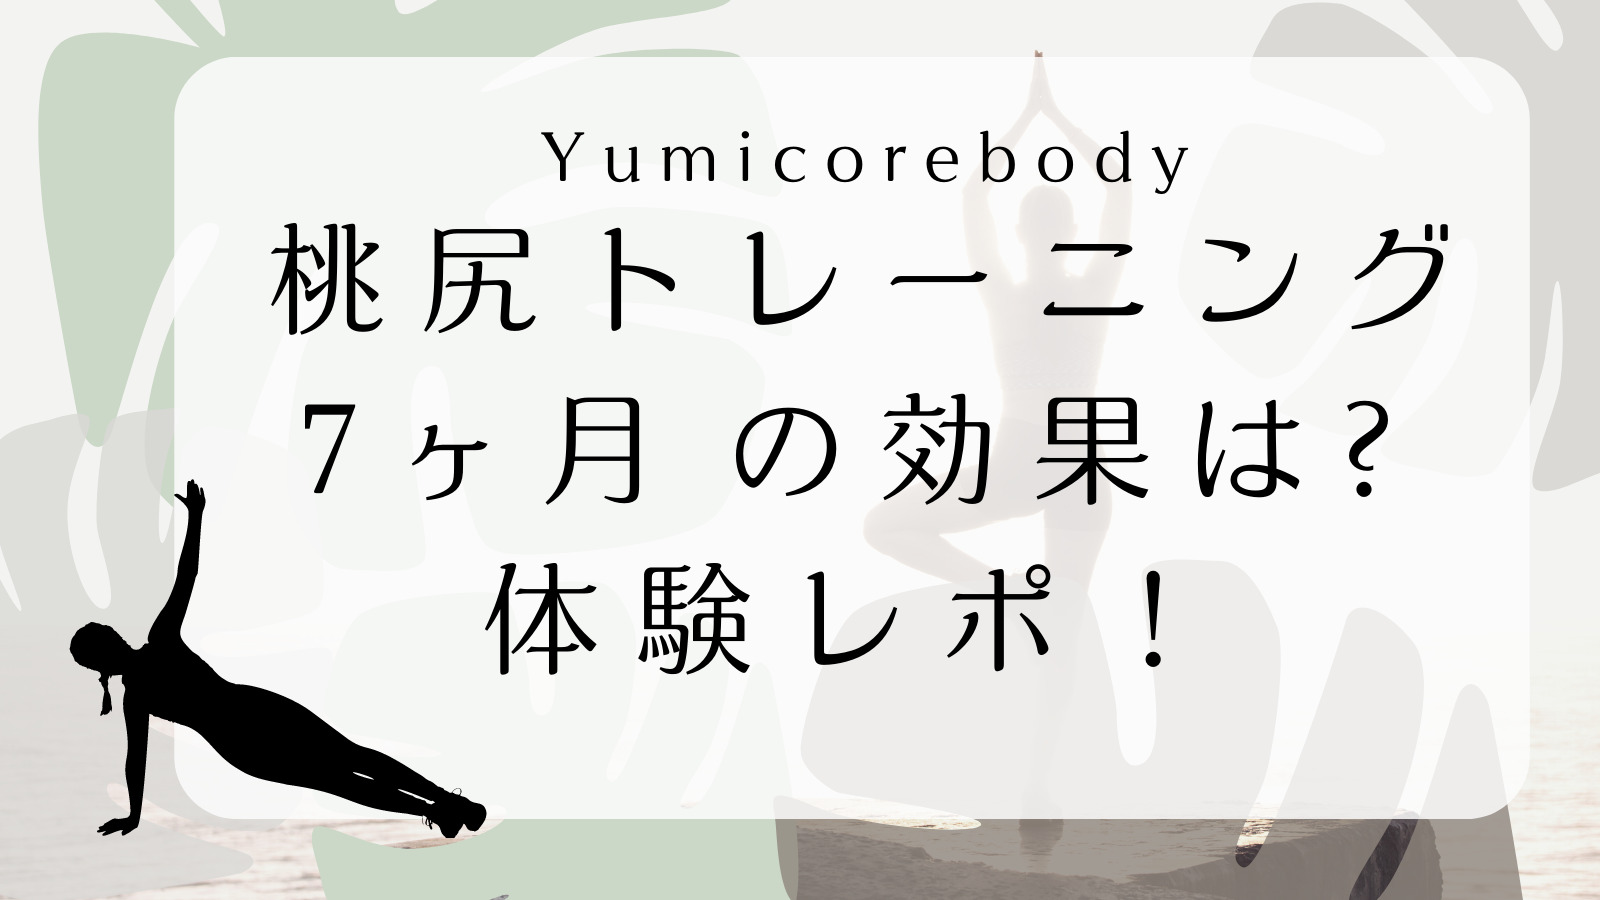 Yumicorebody